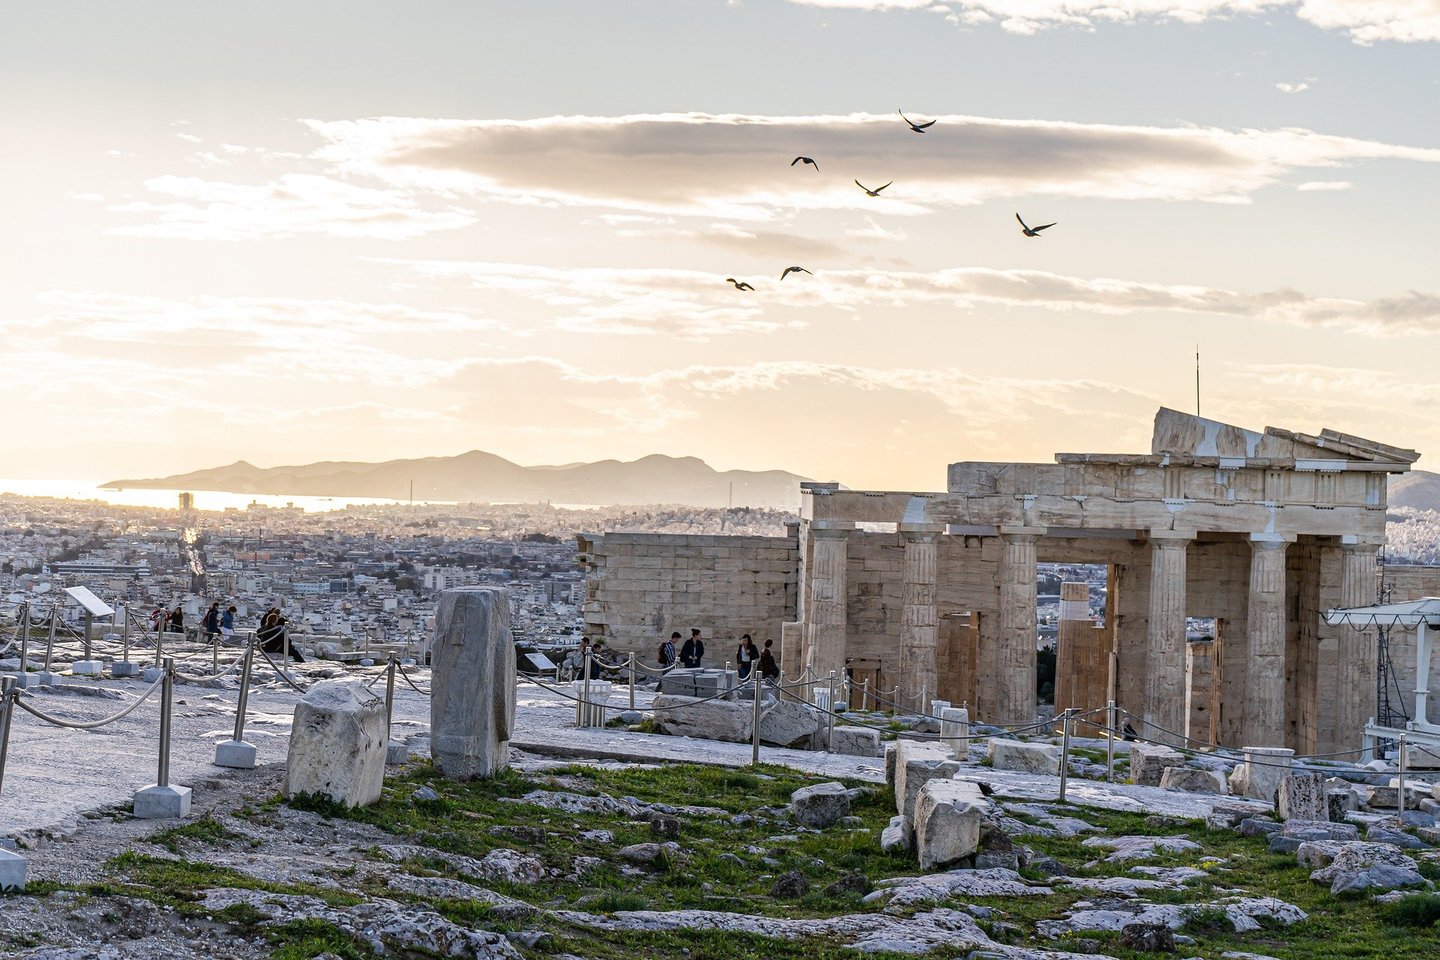 Nuo pirmadienio į Graikiją galės atvykti keliautojai iš maždaug 30-ties valstybių.<br>Pixabay.com nuotr.